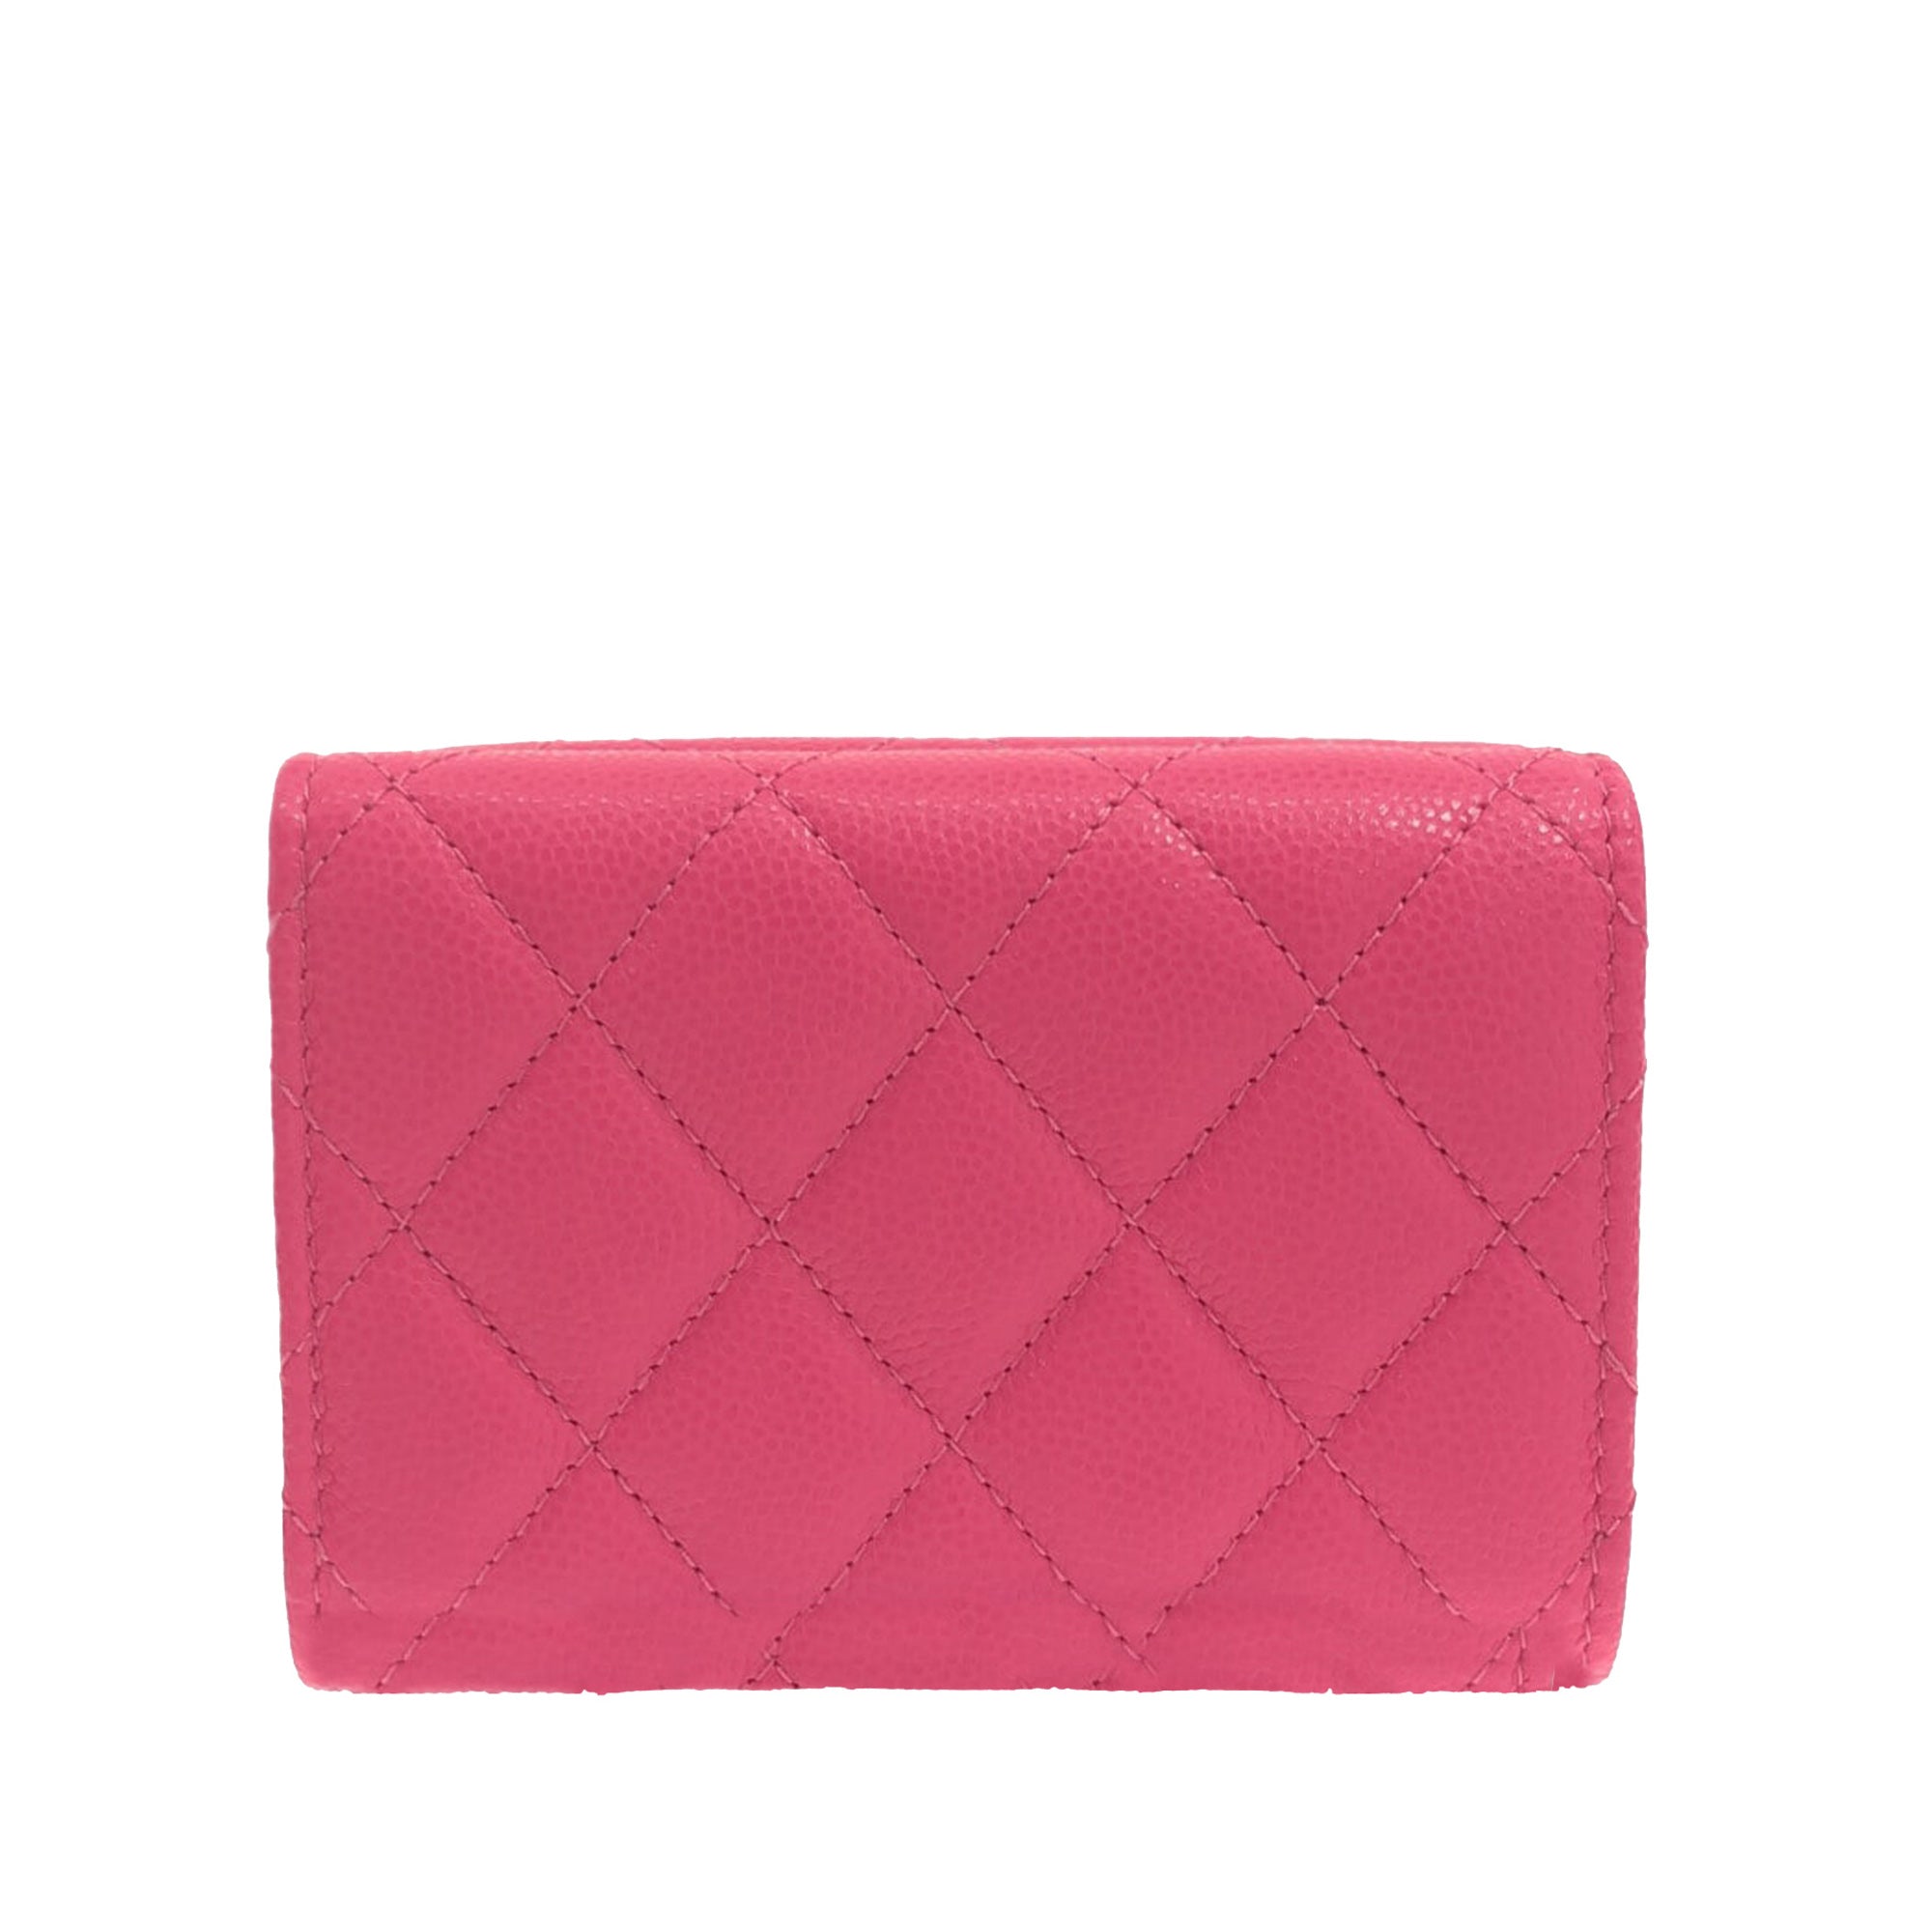 Pink Chanel CC Caviar Zip Around Wallet